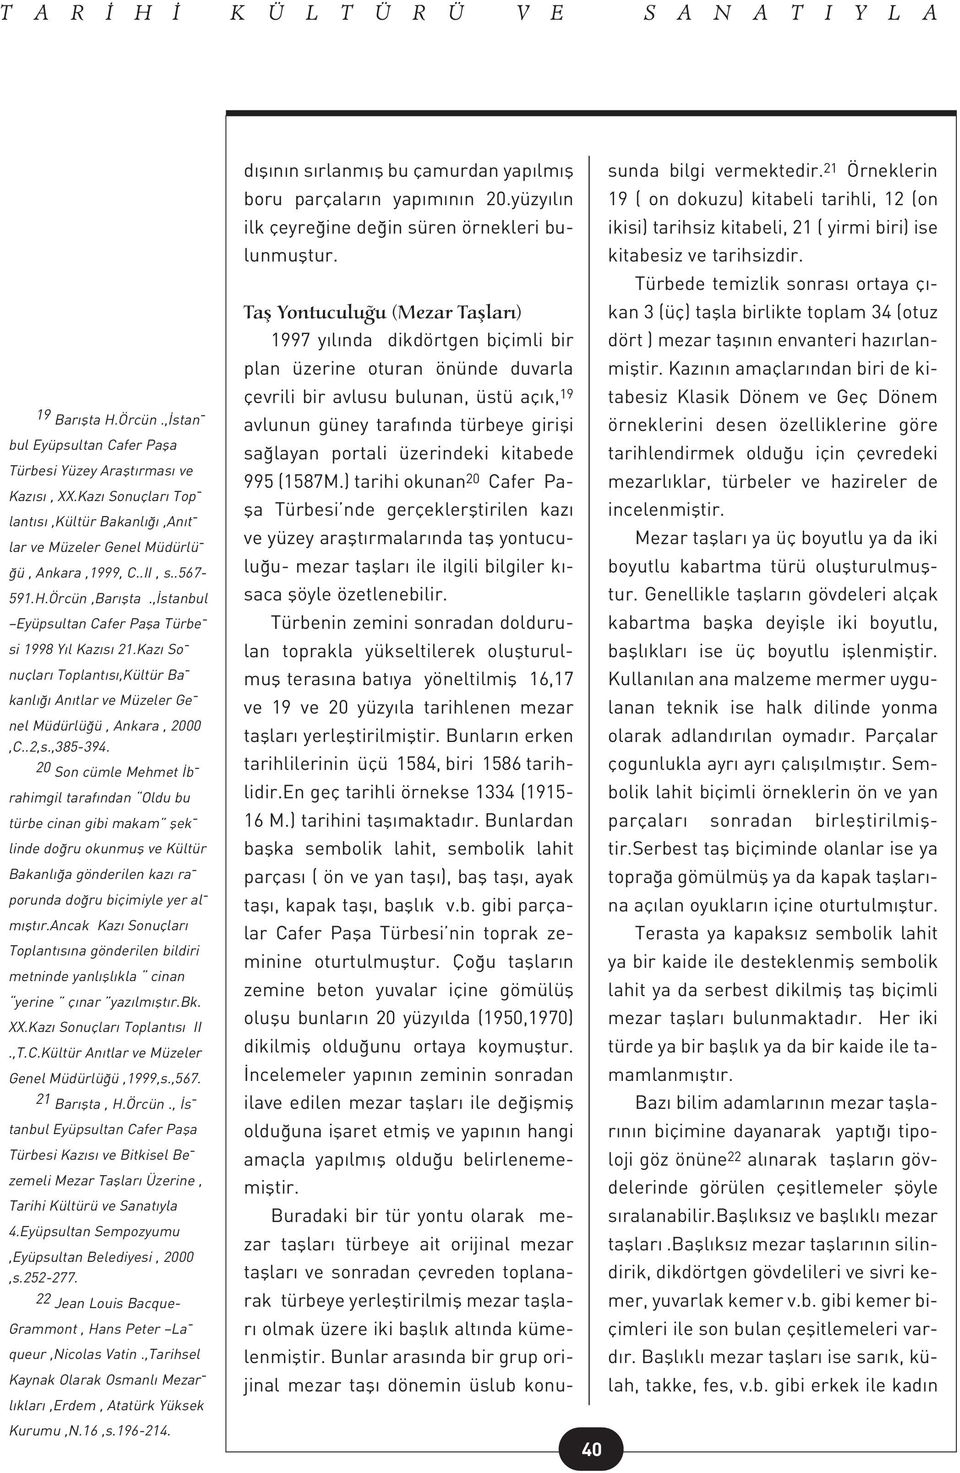 Kaz So - nuçlar Toplant s,kültür Ba - kanl An tlar ve Müzeler Ge - nel Müdürlü ü, Ankara, 2000,C..2,s.,385-394.